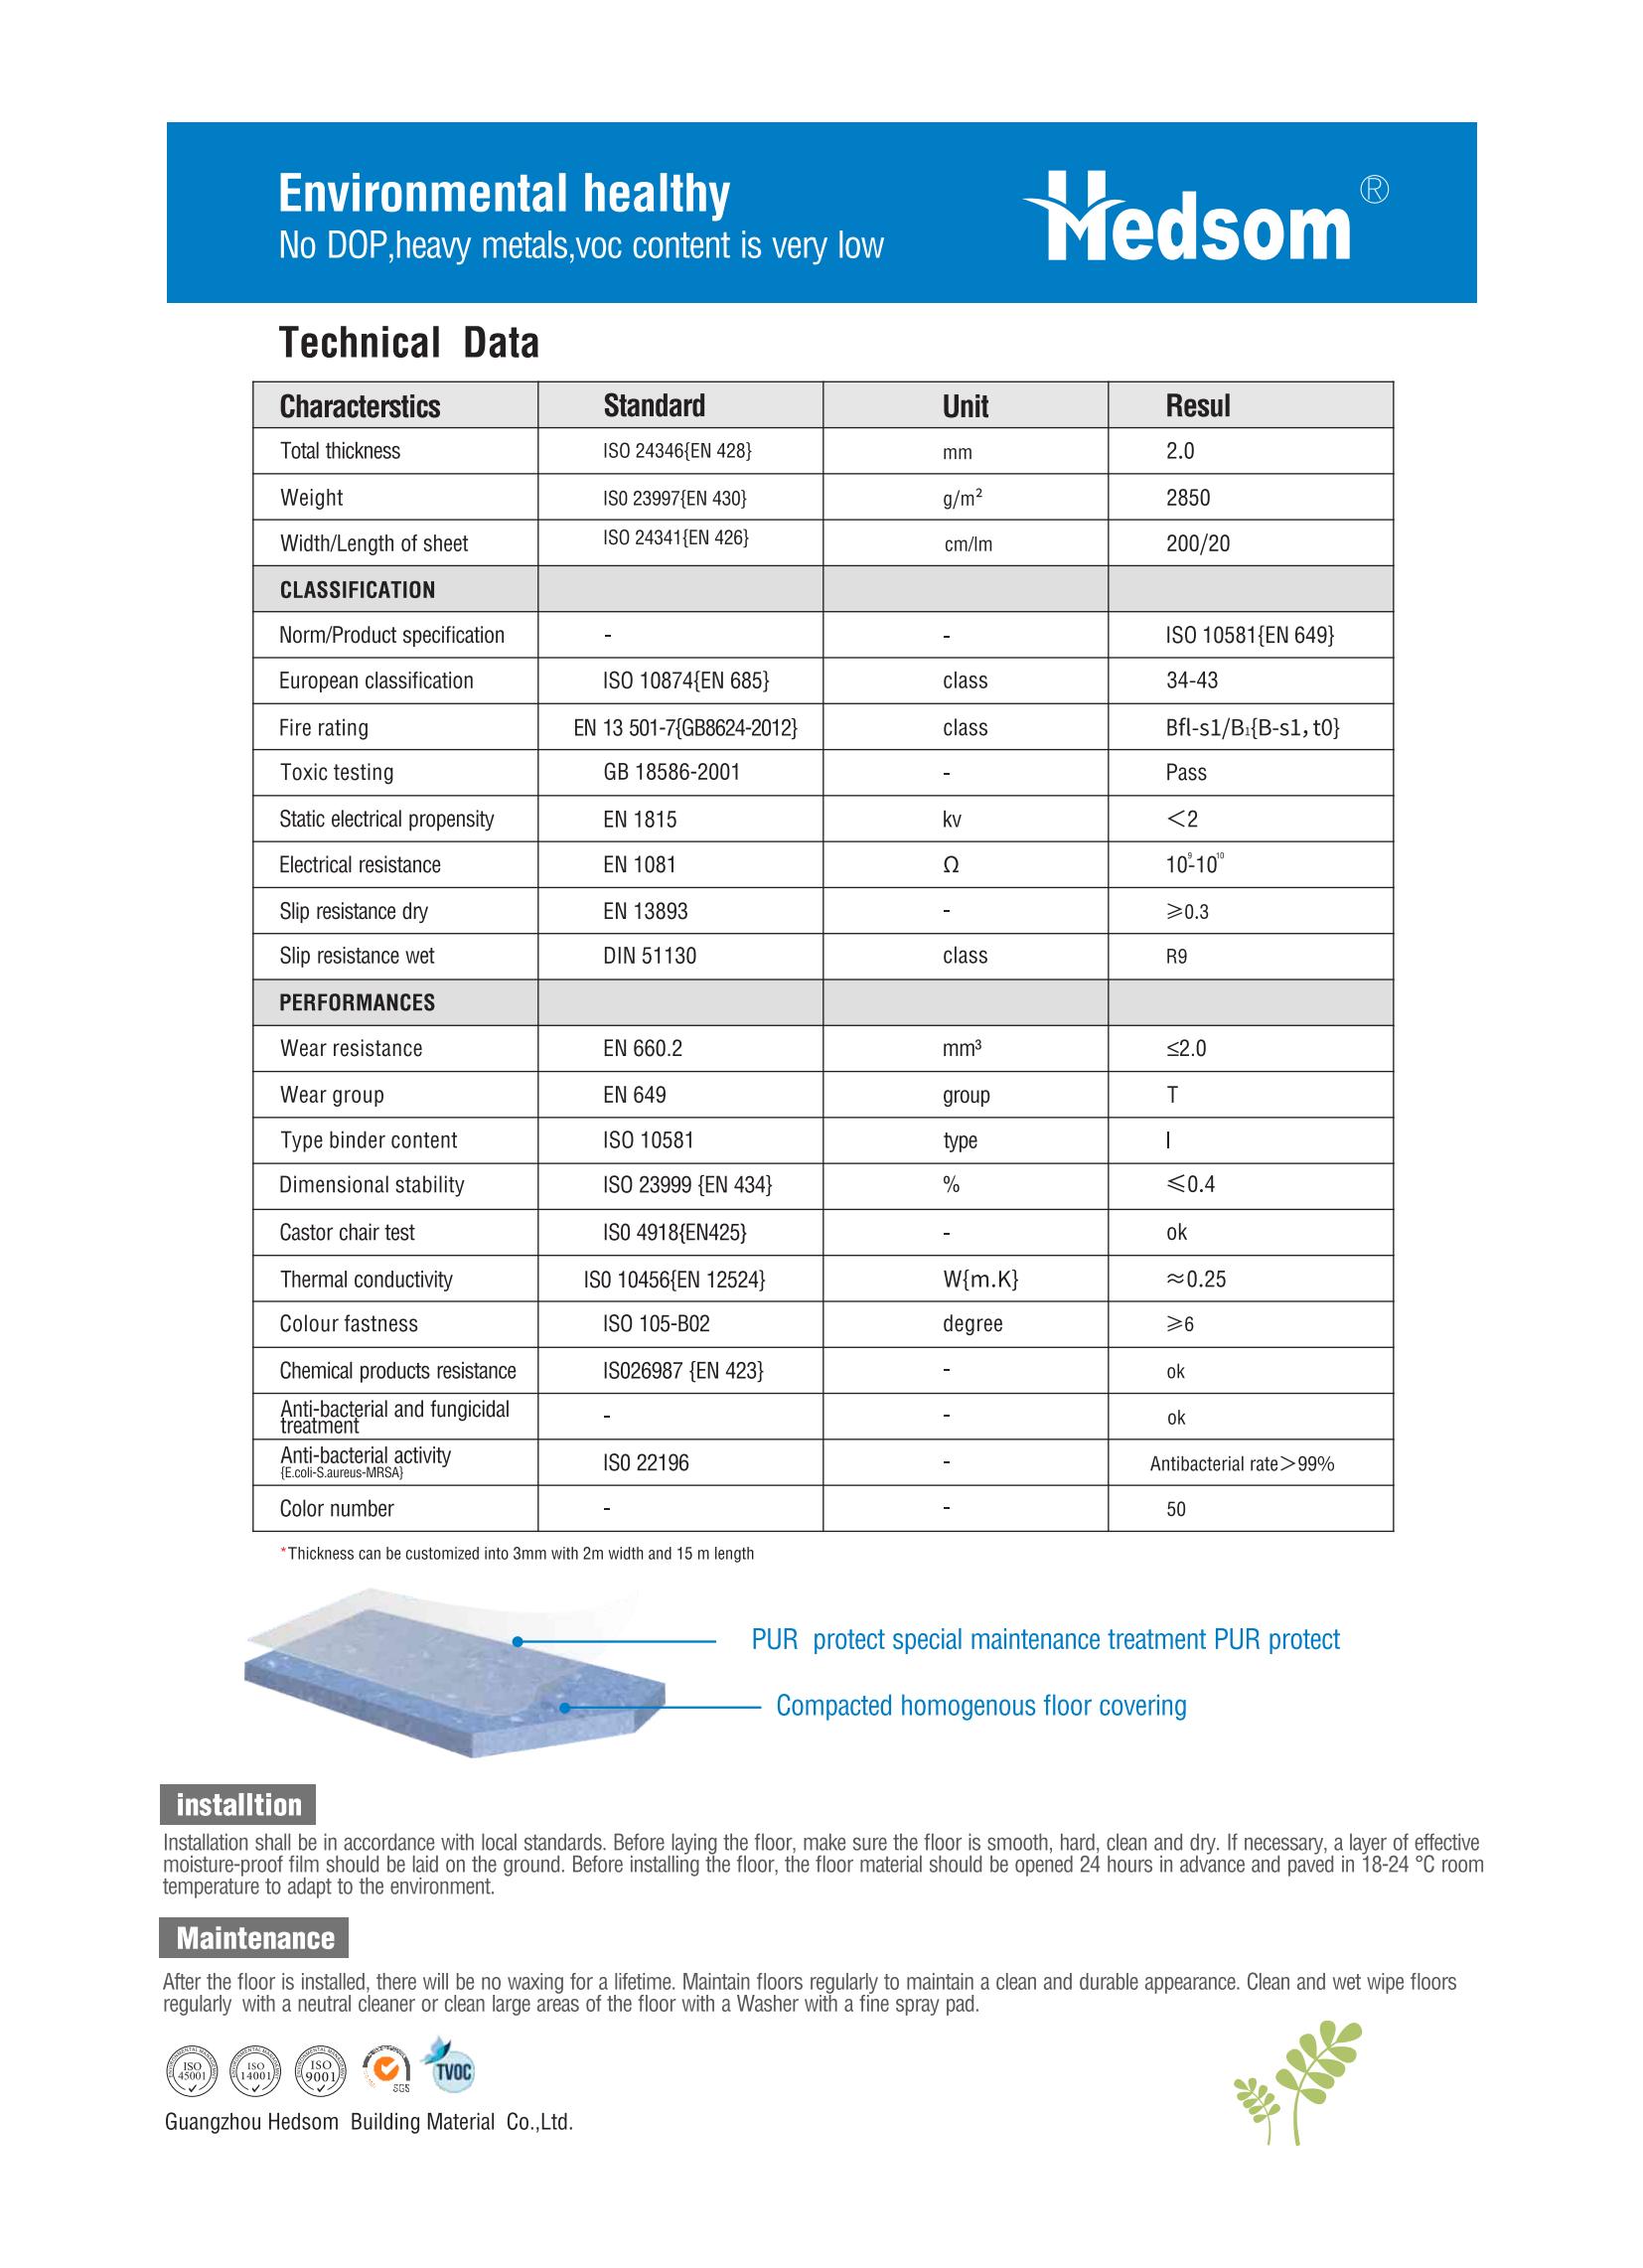 Hedsom PVC Anti bacterial homogeneous Flooring(Moon)-2021_08.jpg